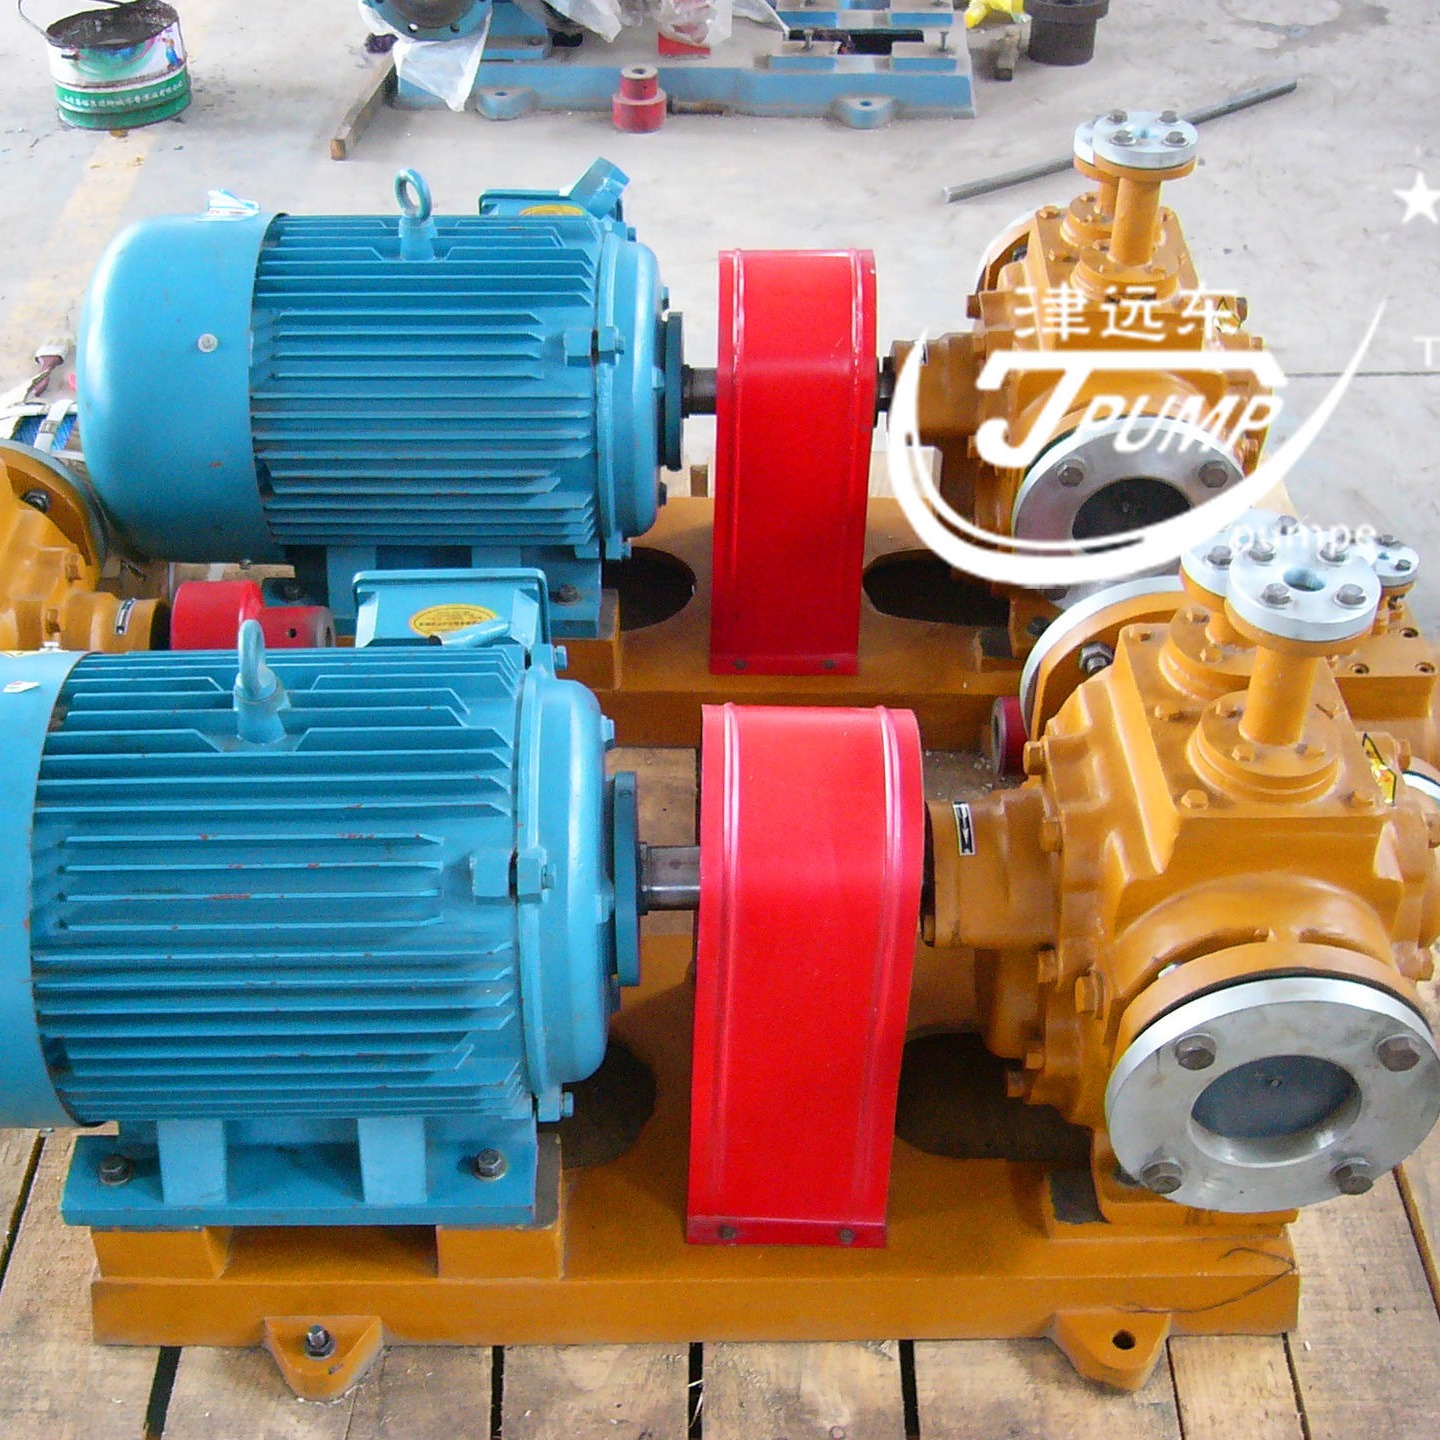 保温齿轮泵 津远东 RCB-10齿轮泵  保温沥青泵 不锈钢材质  流量10m3/h  量大从优